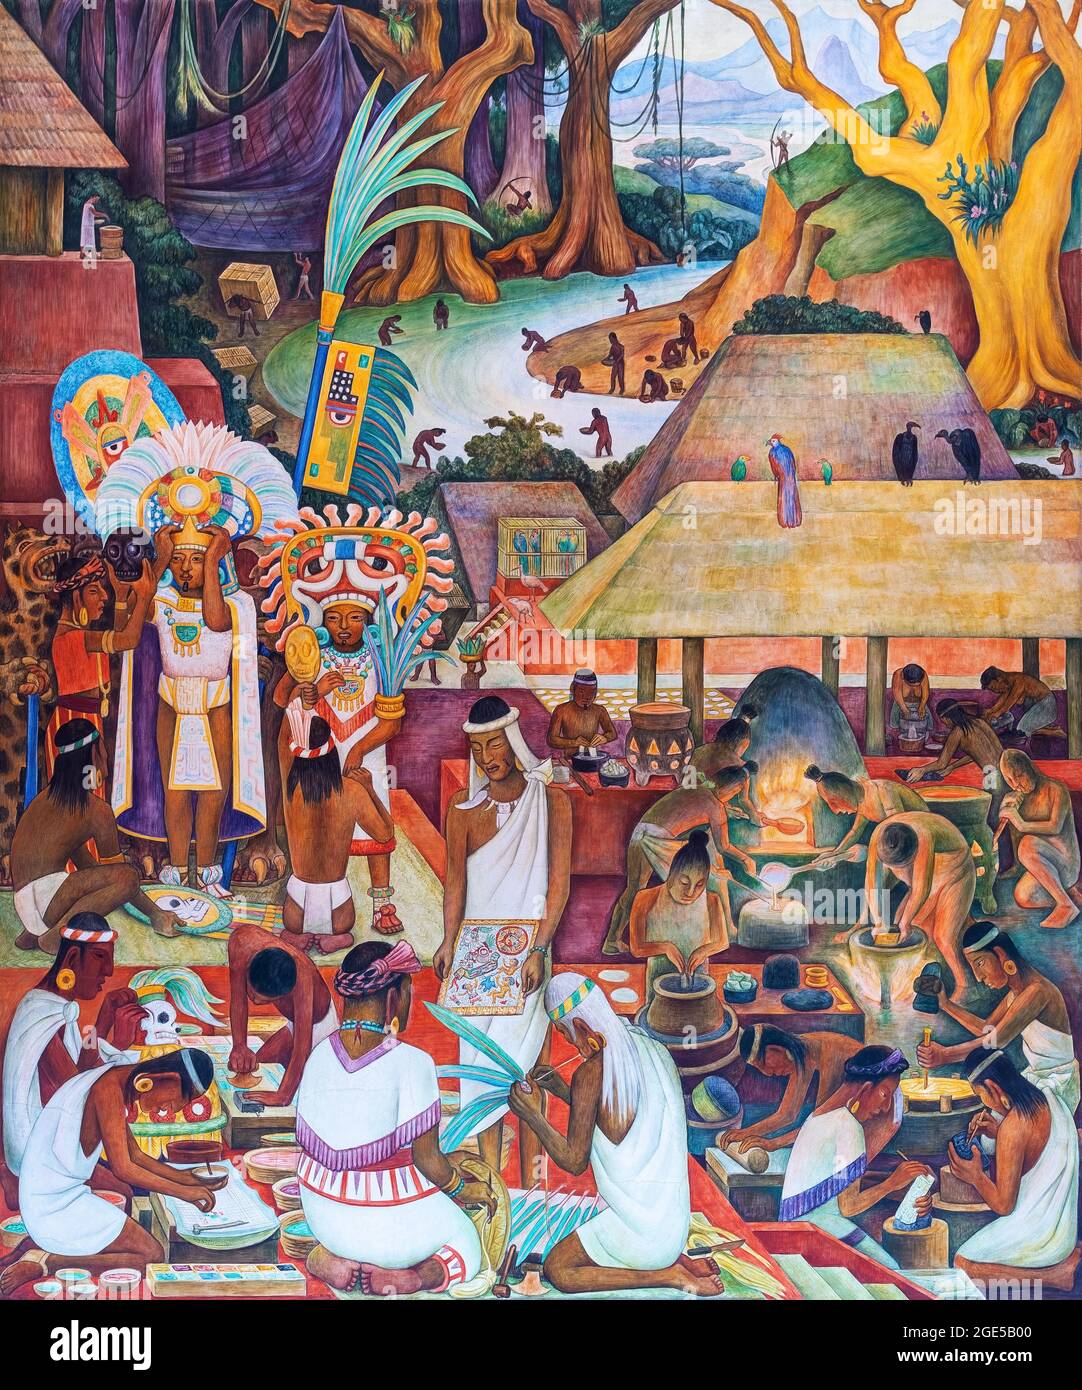 Featherwork art et orfèvre (culture Zapotec), Diego Rivera murale dans le palais présidentiel, Mexico, Mexique. Banque D'Images